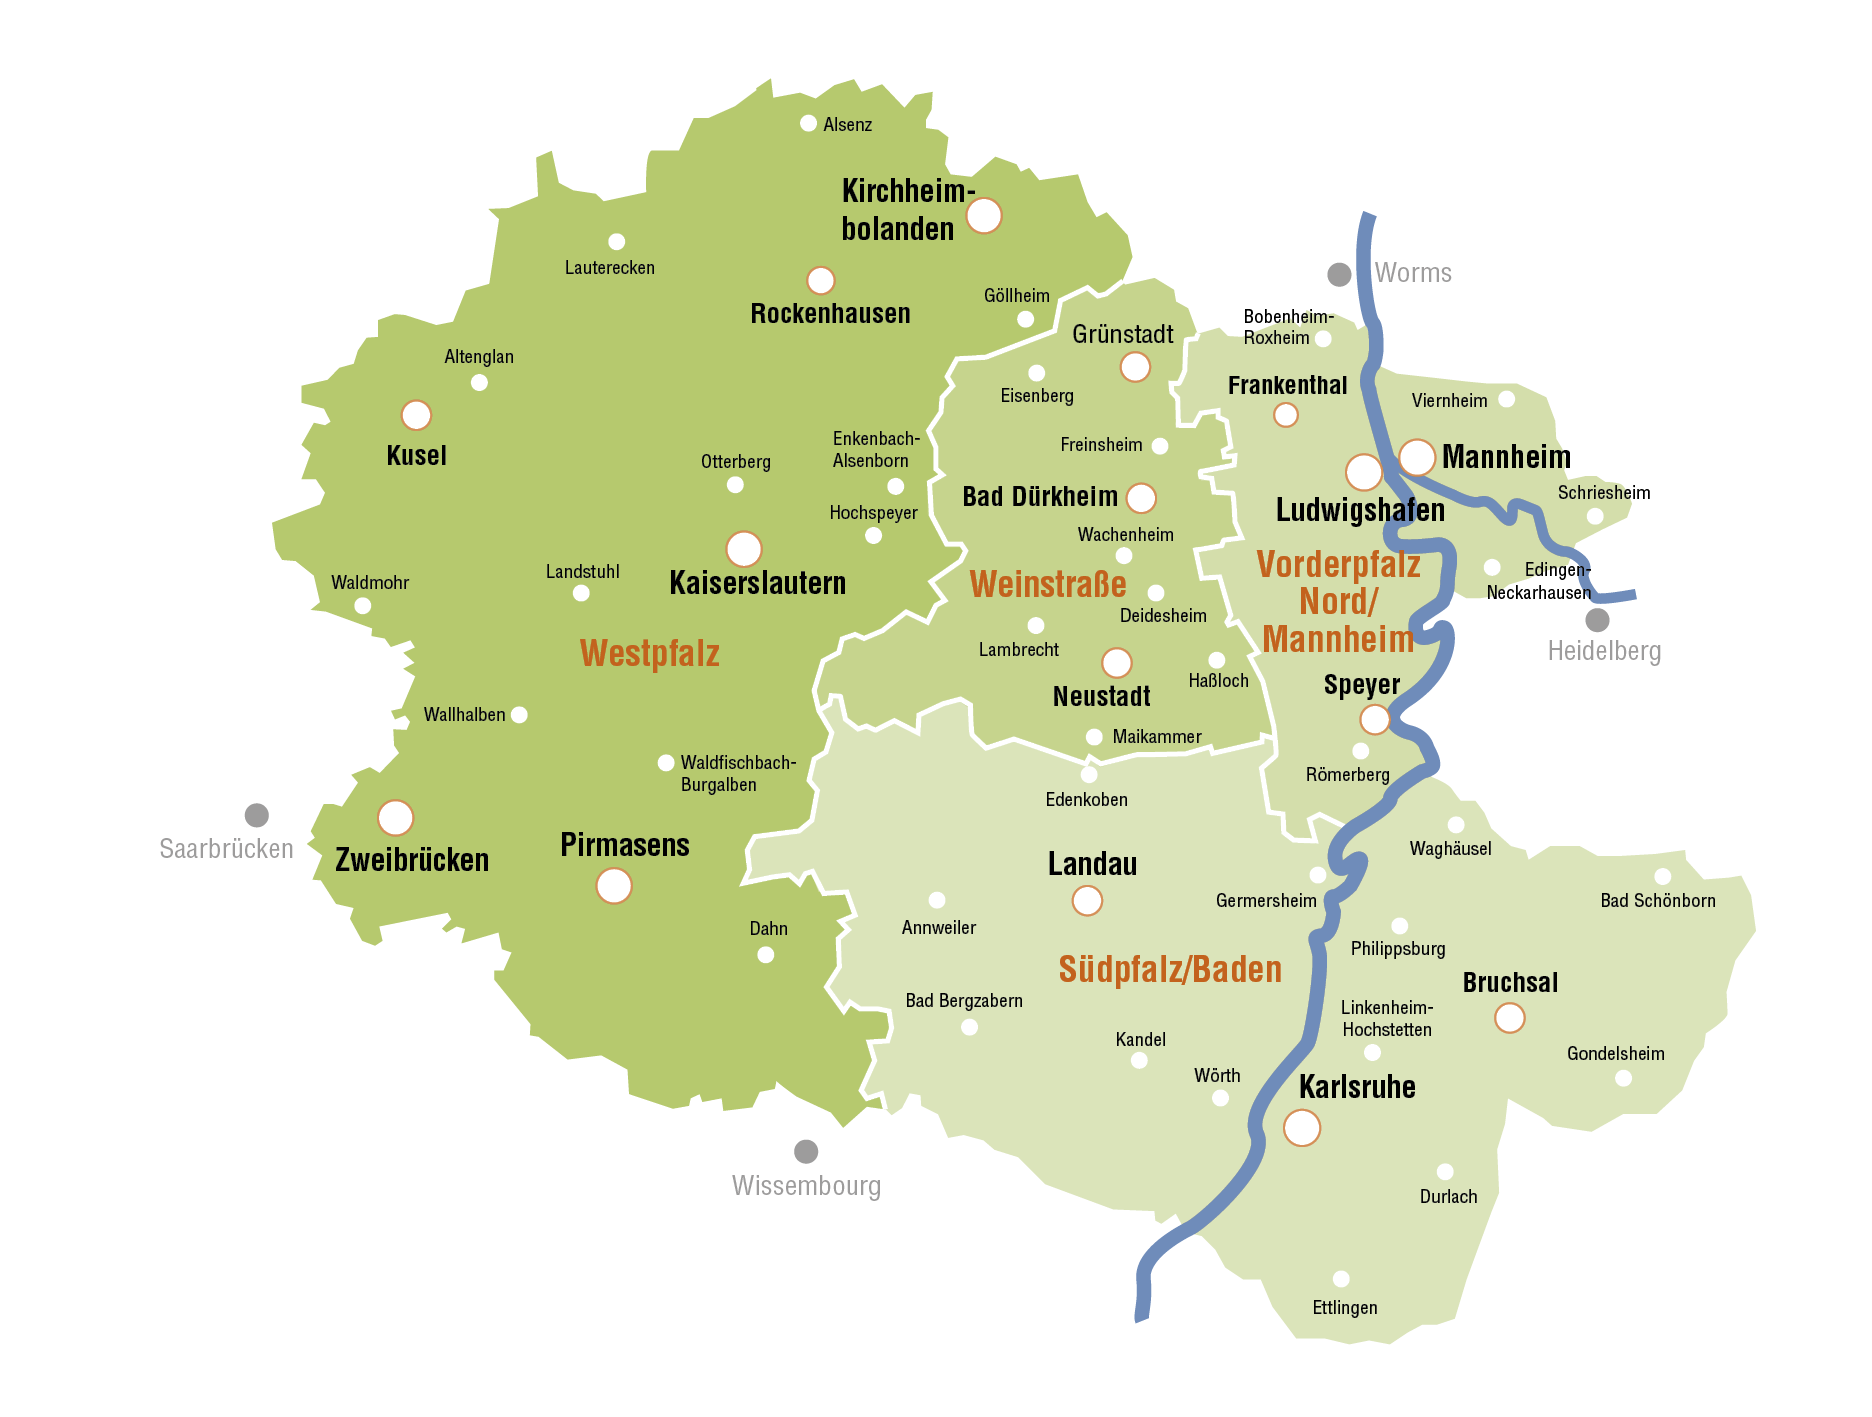 Diese Karte zeigt die vier Regionalbereiche Westpfalz, Südpfalz/Baden, Vorderpfalz Nord/Mannheim und die Weinstraße sowie Städte wie z.B. Mannheim, Kirchheimbolanden, Kaiserslautern, Zweibrücken, Pirmasens, Landau oder Karlsruhe im Verbreitungsgebiet des Werbevermarkters Mediawerk Südwest.